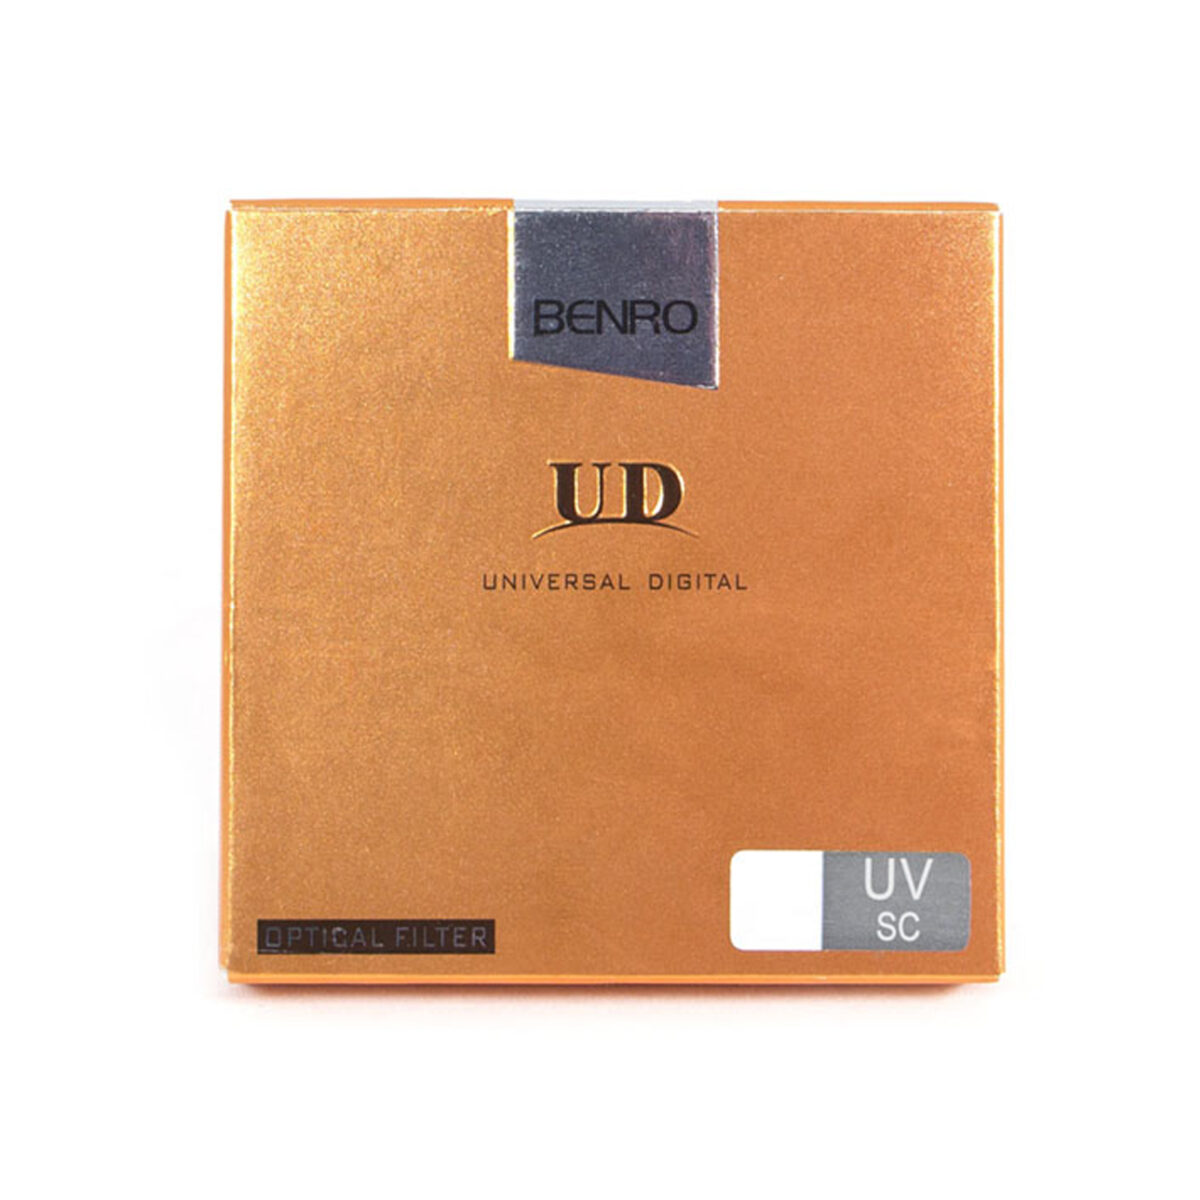 Benro 49 mm Slim UD UV SC filtre 1